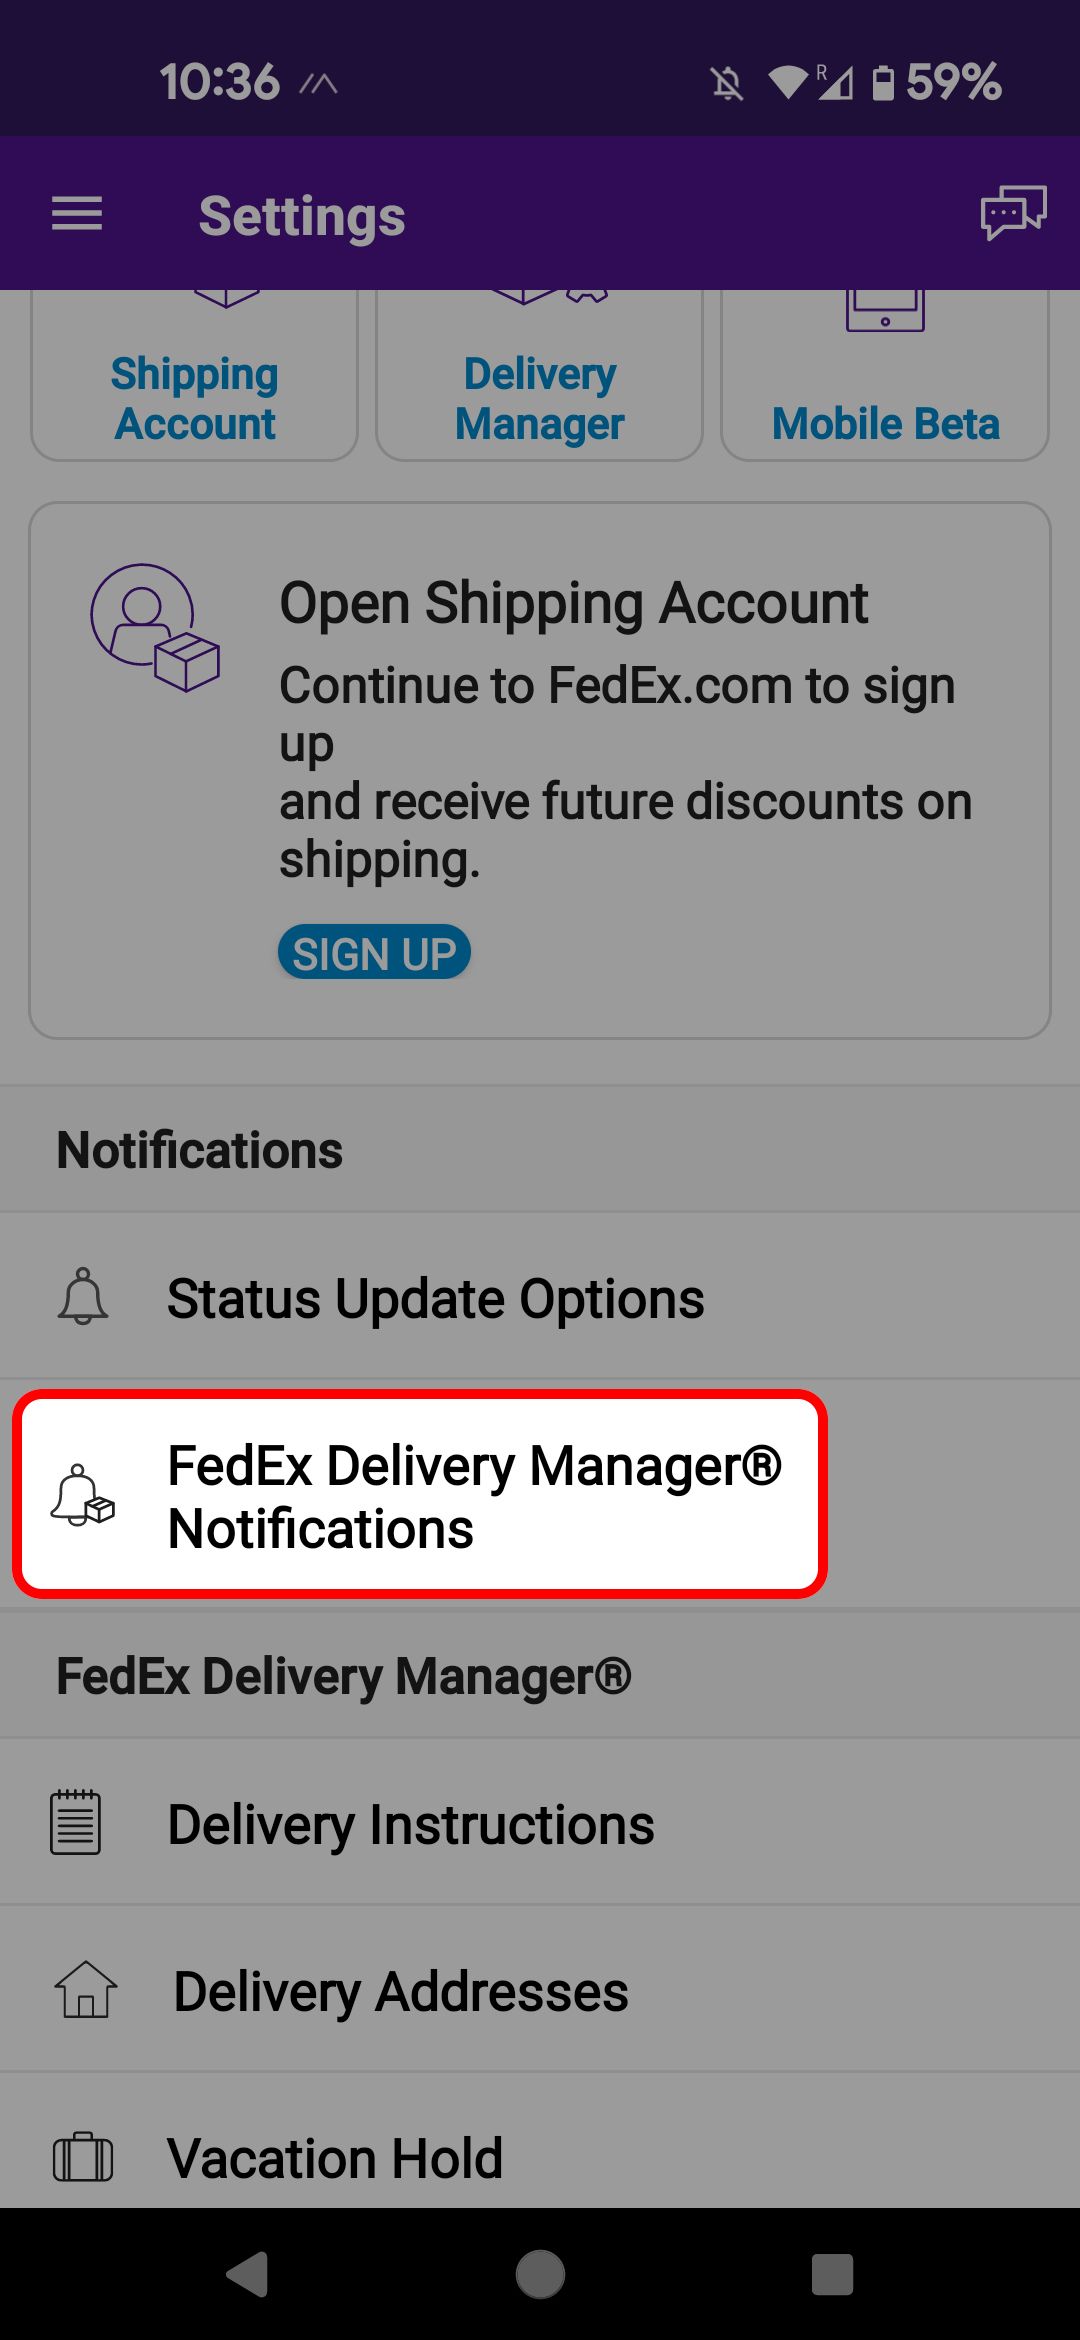 Menu Configurações do aplicativo móvel FedEx destacando a opção FedEx Delilvery Manager Notifications